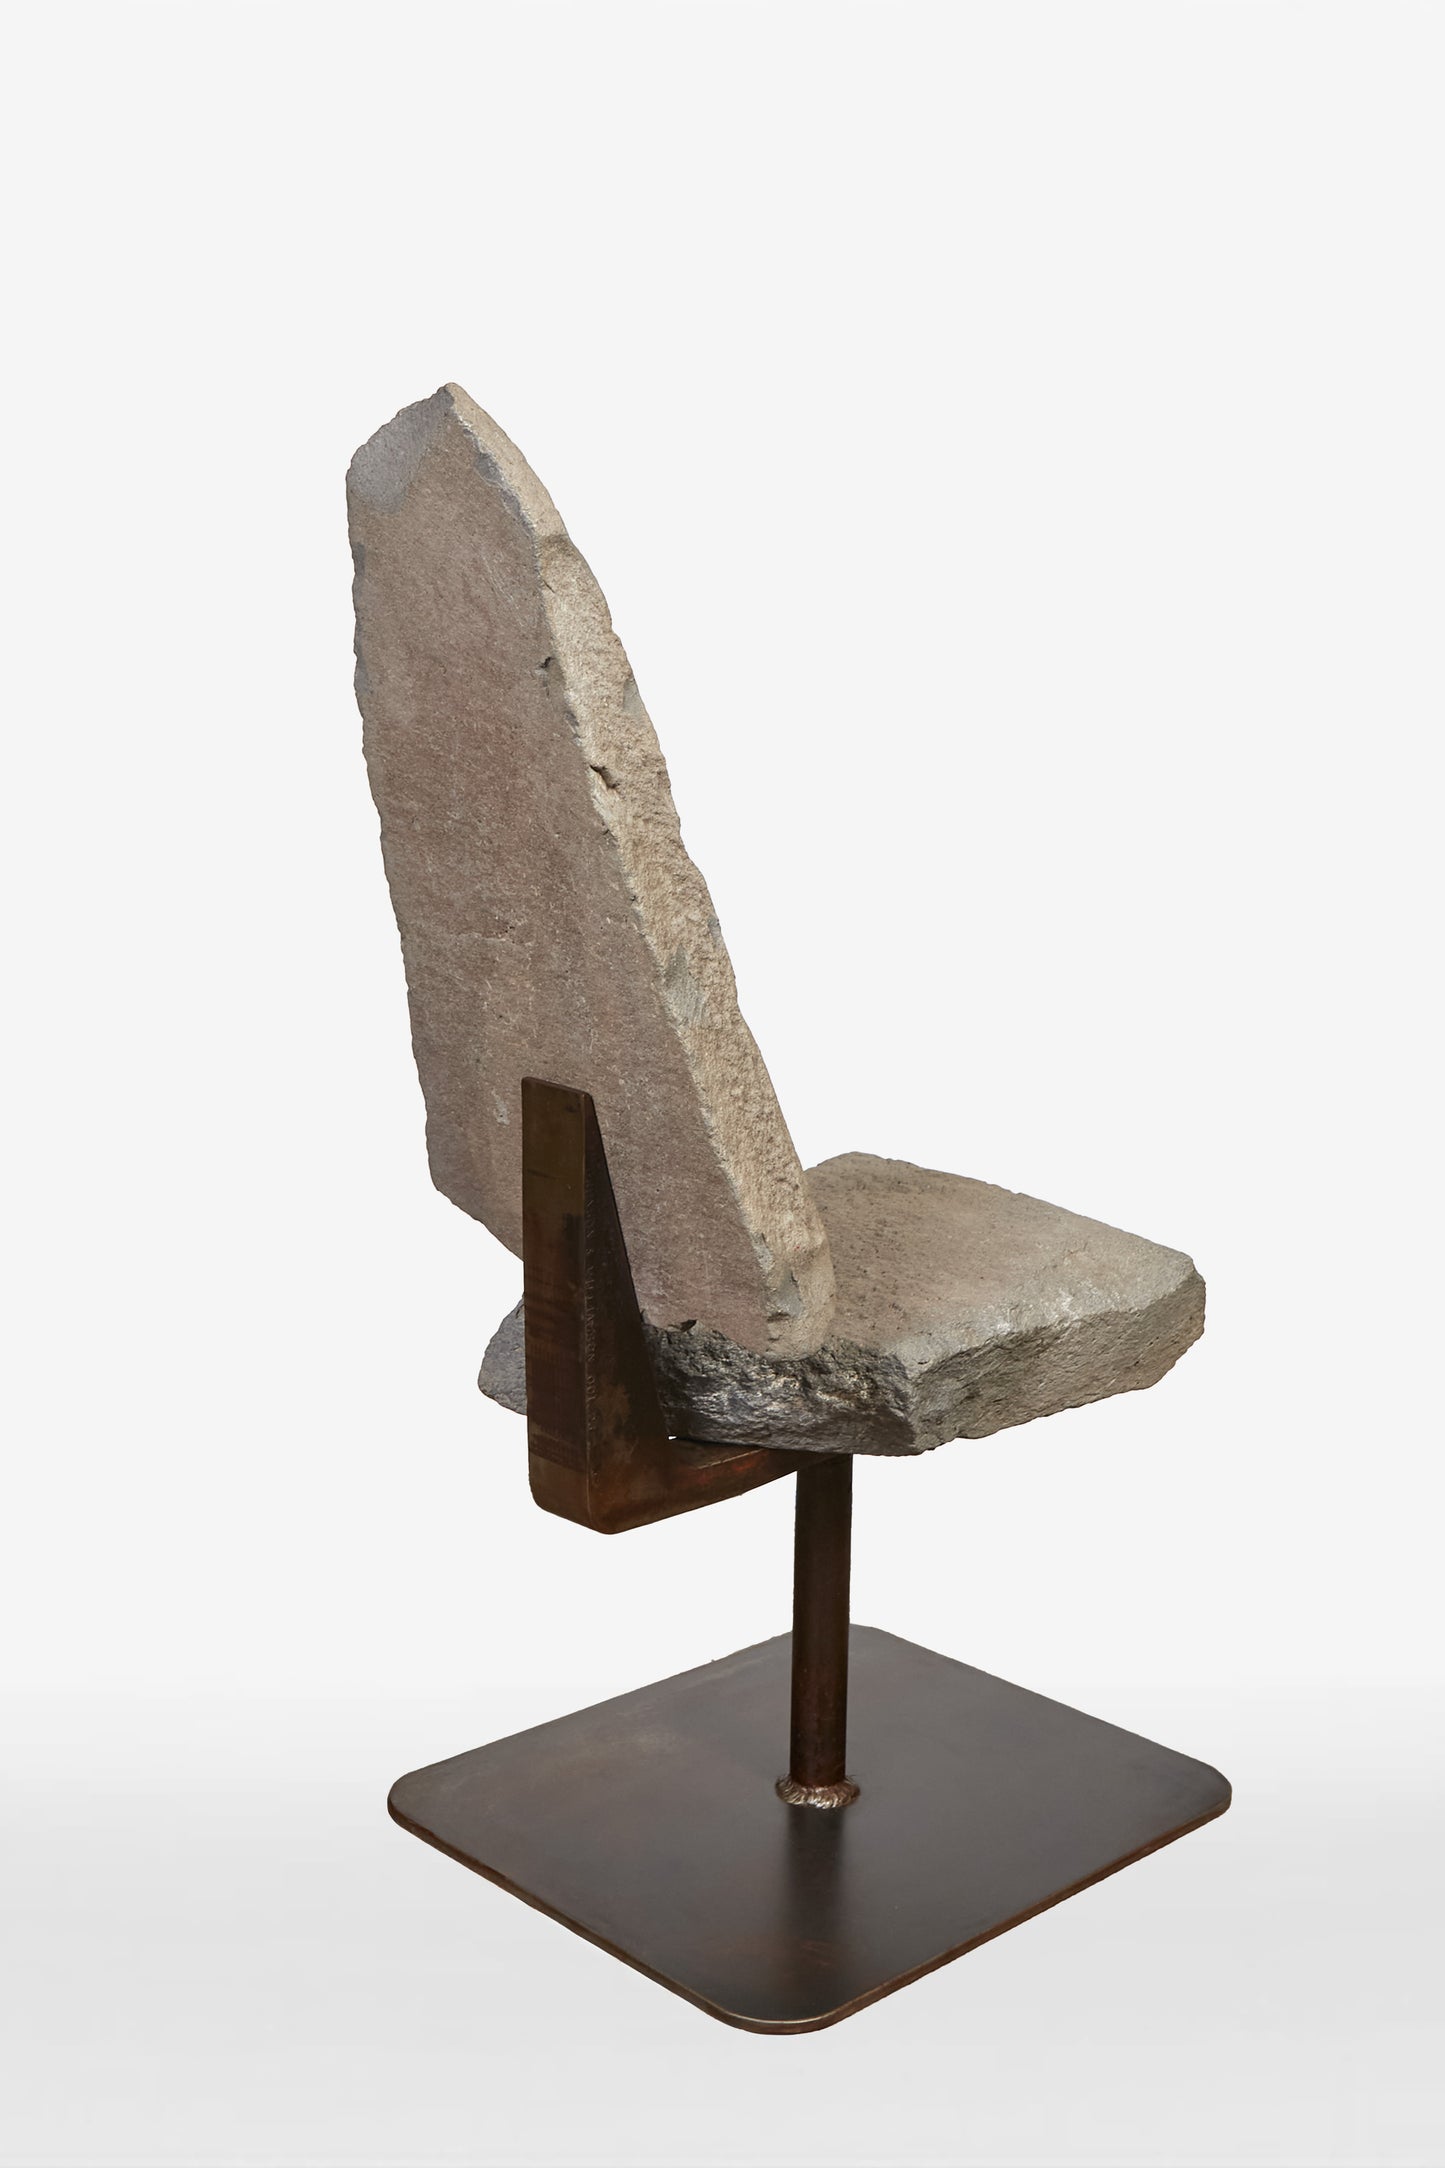 Stone Chair 001